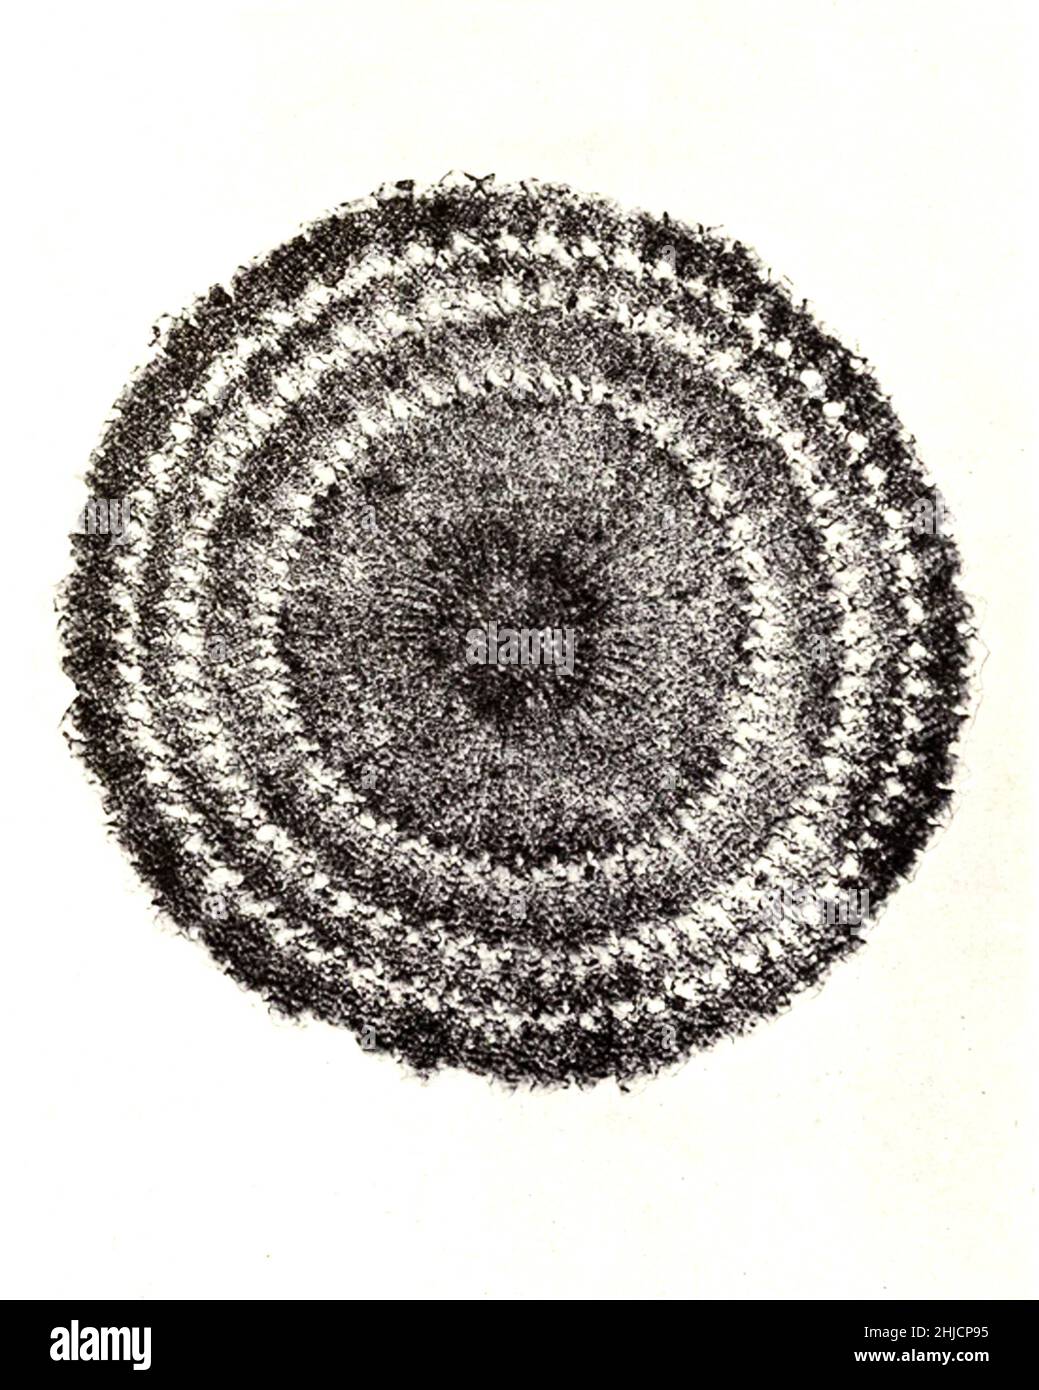 Sección de la columna vertebral de la equinus (erizo marino). Ampliación: 60x. Fotomicrografía realizada por Arthur E Smith a principios de 1900, utilizando un microscopio y una cámara combinados. En 1904, la Royal Society de Londres exhibió al público una serie de fotomicrografías de Smith. Más tarde fueron publicados en 1909 en un libro llamado 'Nature Through Microscope & Camera'. Fueron los primeros ejemplos de fotomicroscopía que muchos habían visto. Foto de stock